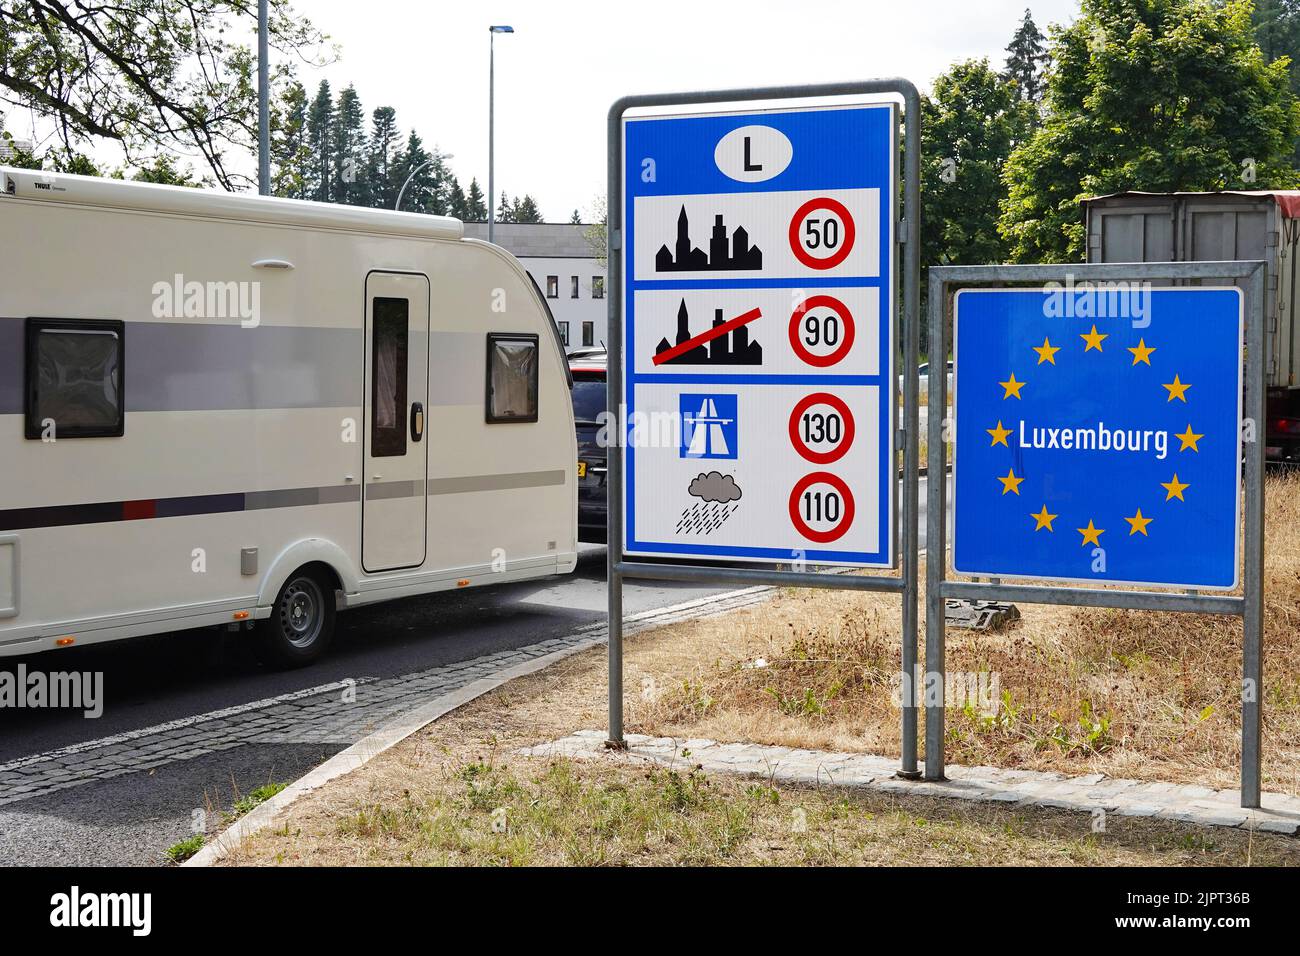 Une caravane de camping traverse la frontière luxembourgeoise Banque D'Images